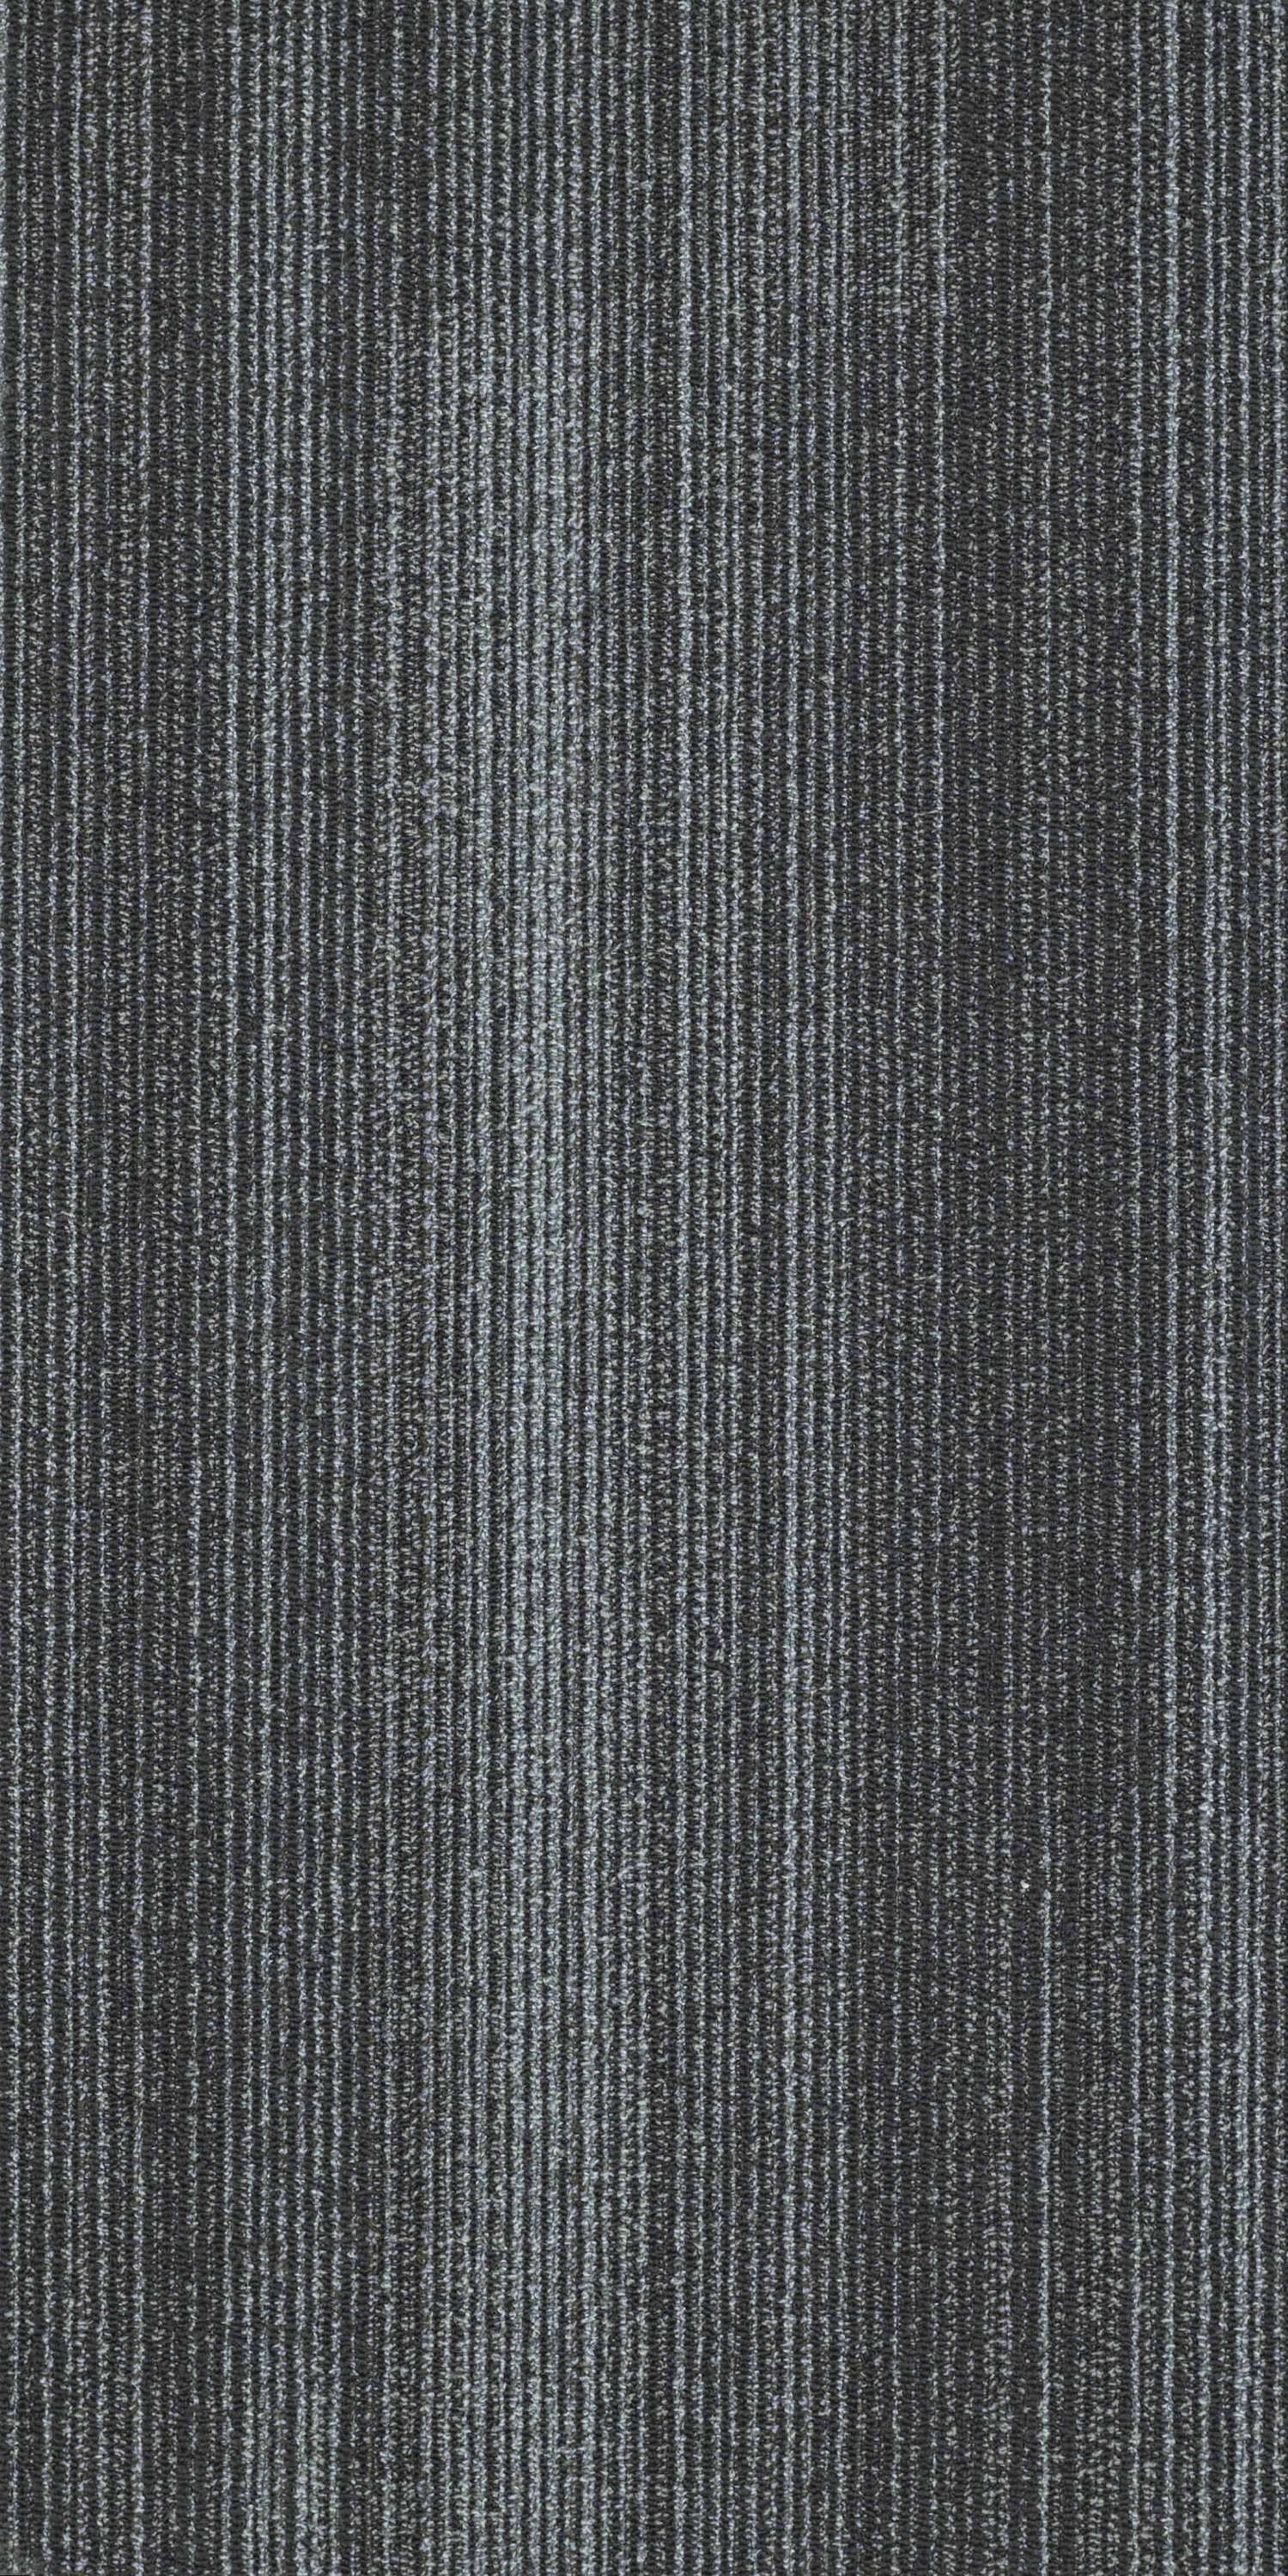 Ocean Blue Ribbed Carpet Tile